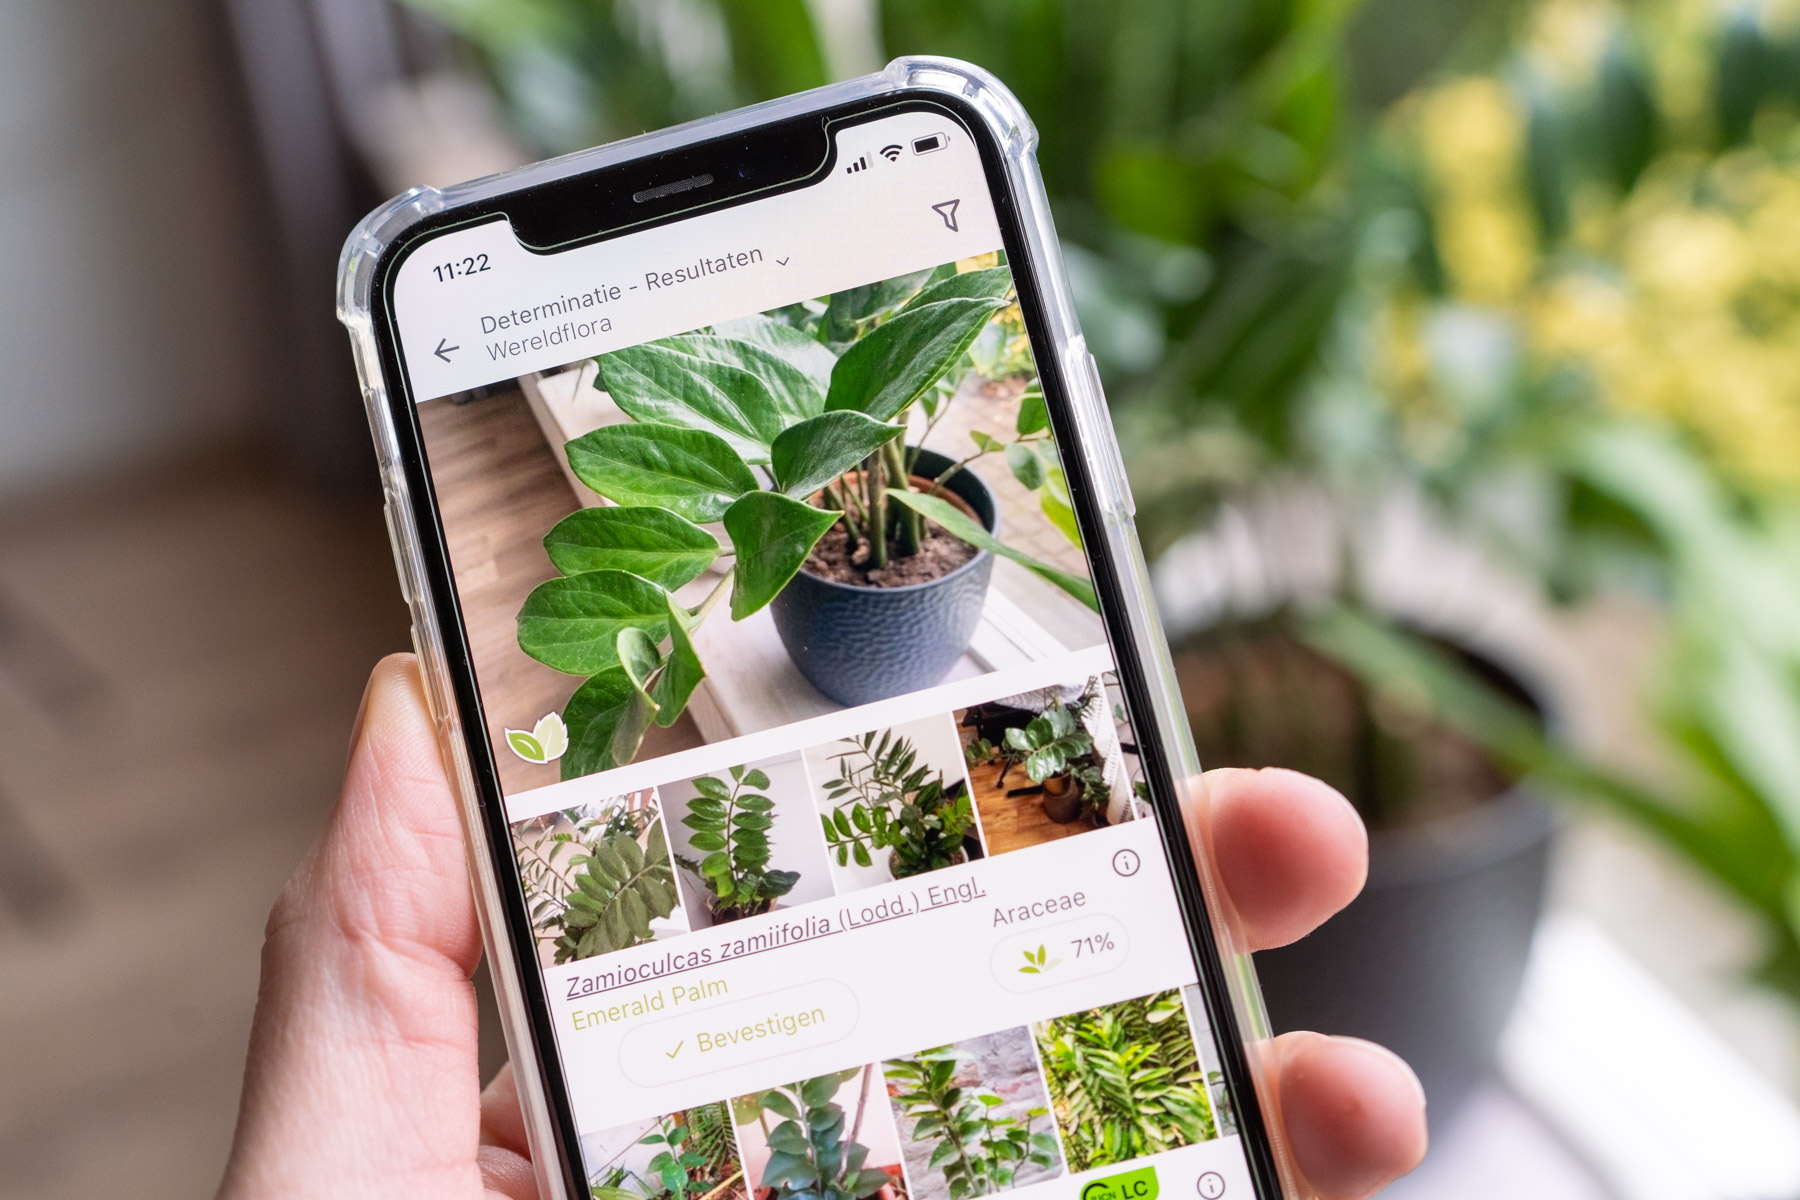 gevechten herberg Bengelen 8 (gratis) apps om planten te herkennen - Plantleven